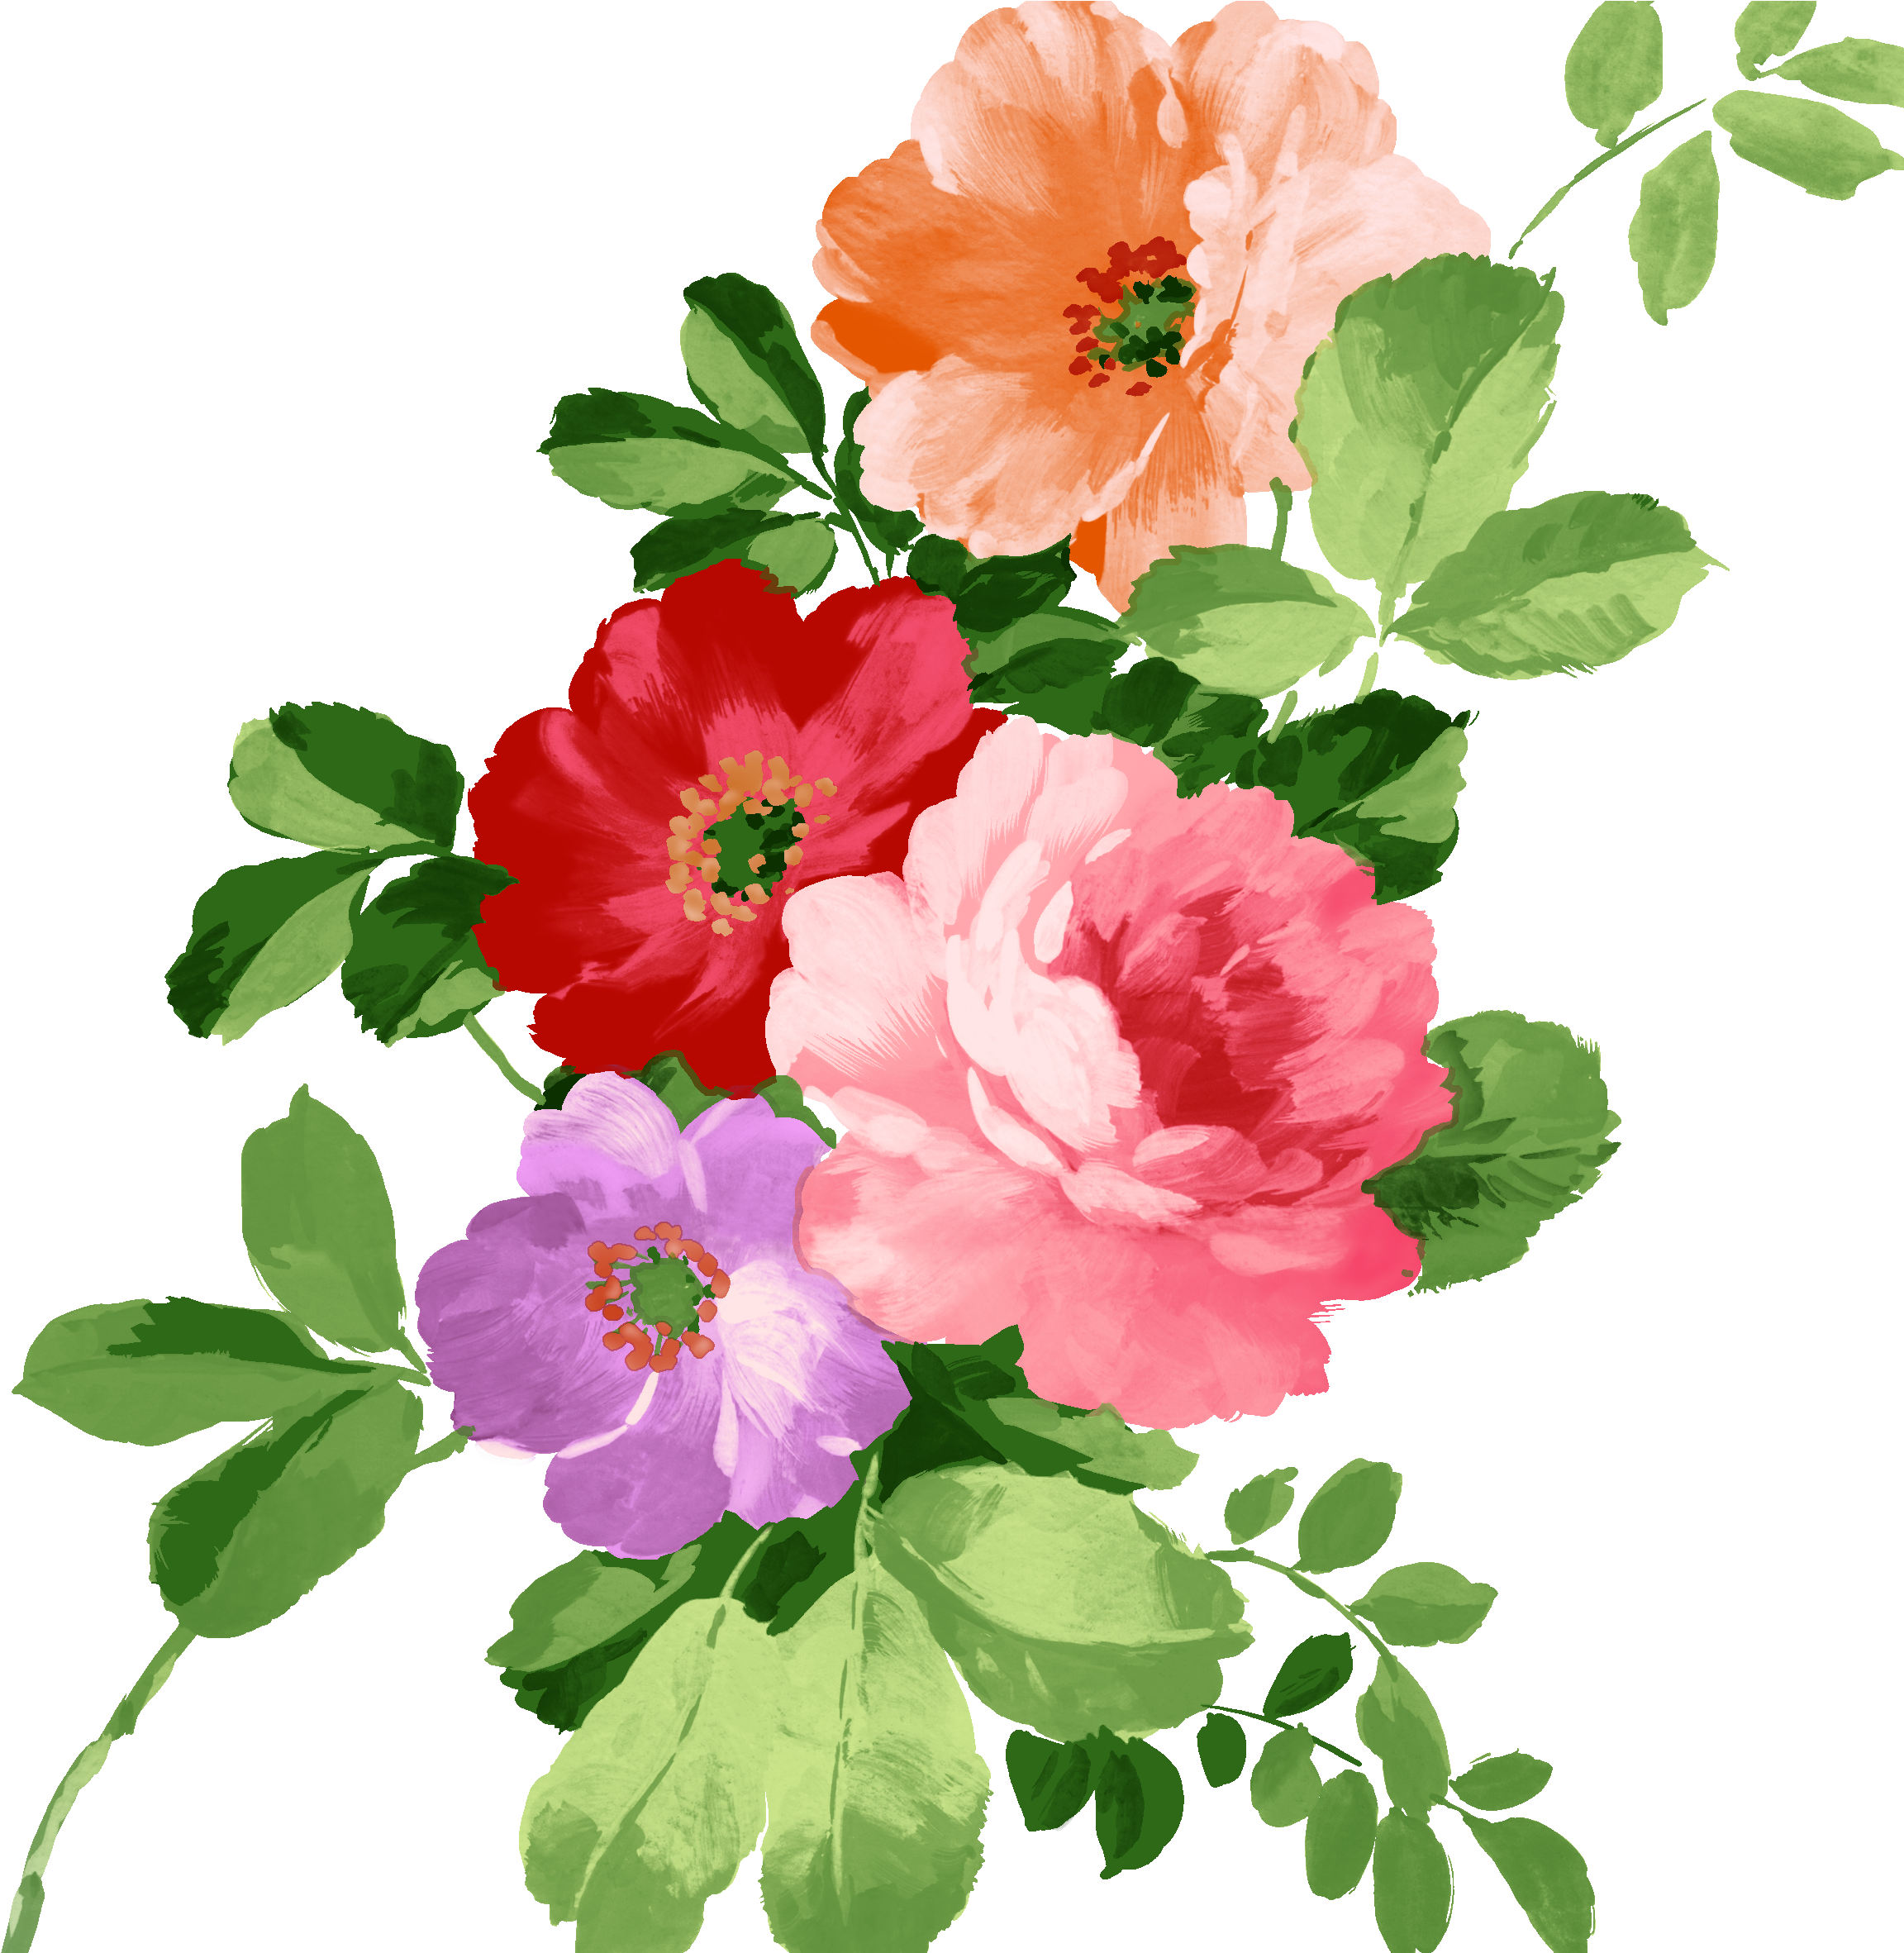 Watercolor Floral Elements - Imagens De Flores Png.